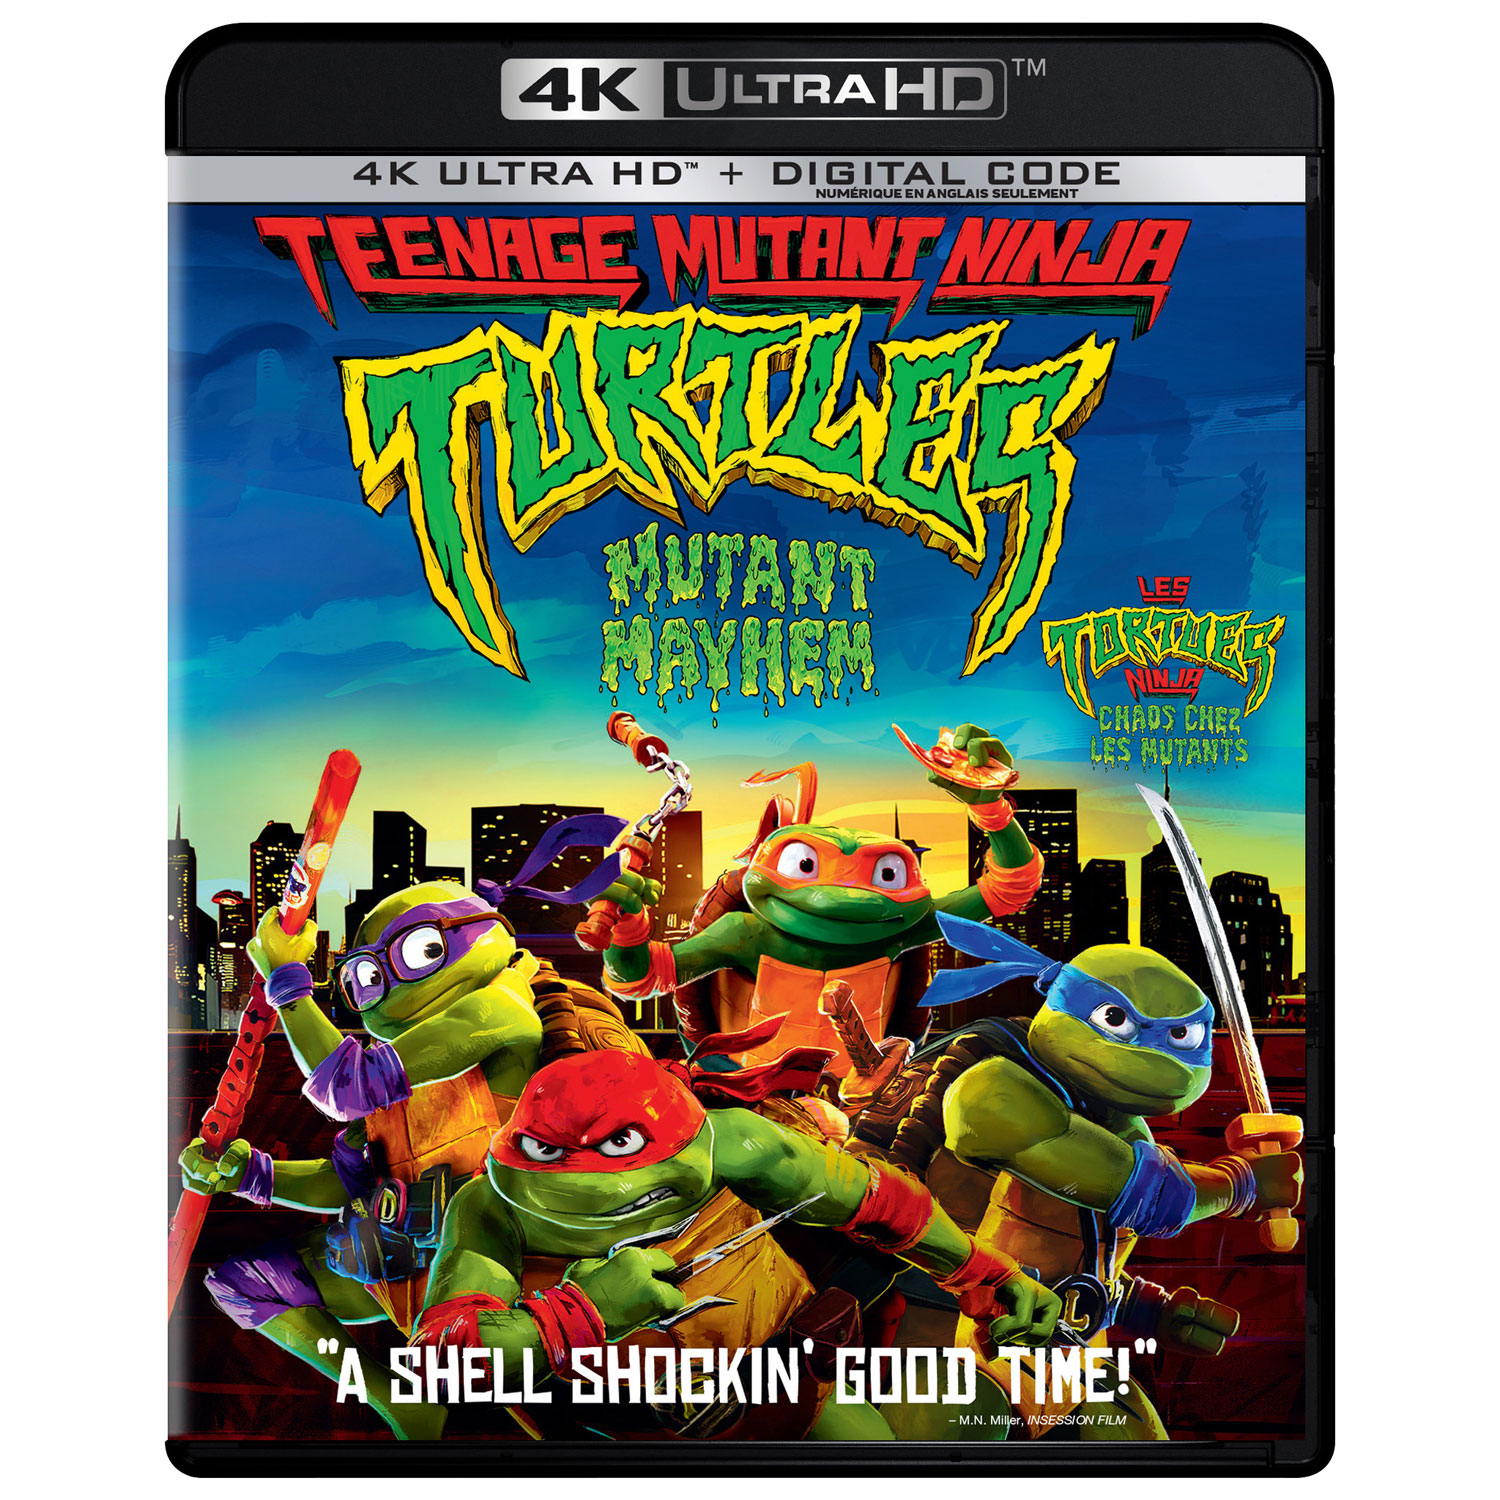 Teenage Mutant Ninja Turtles: Mutant Mayhem, 4K UHD + Digital